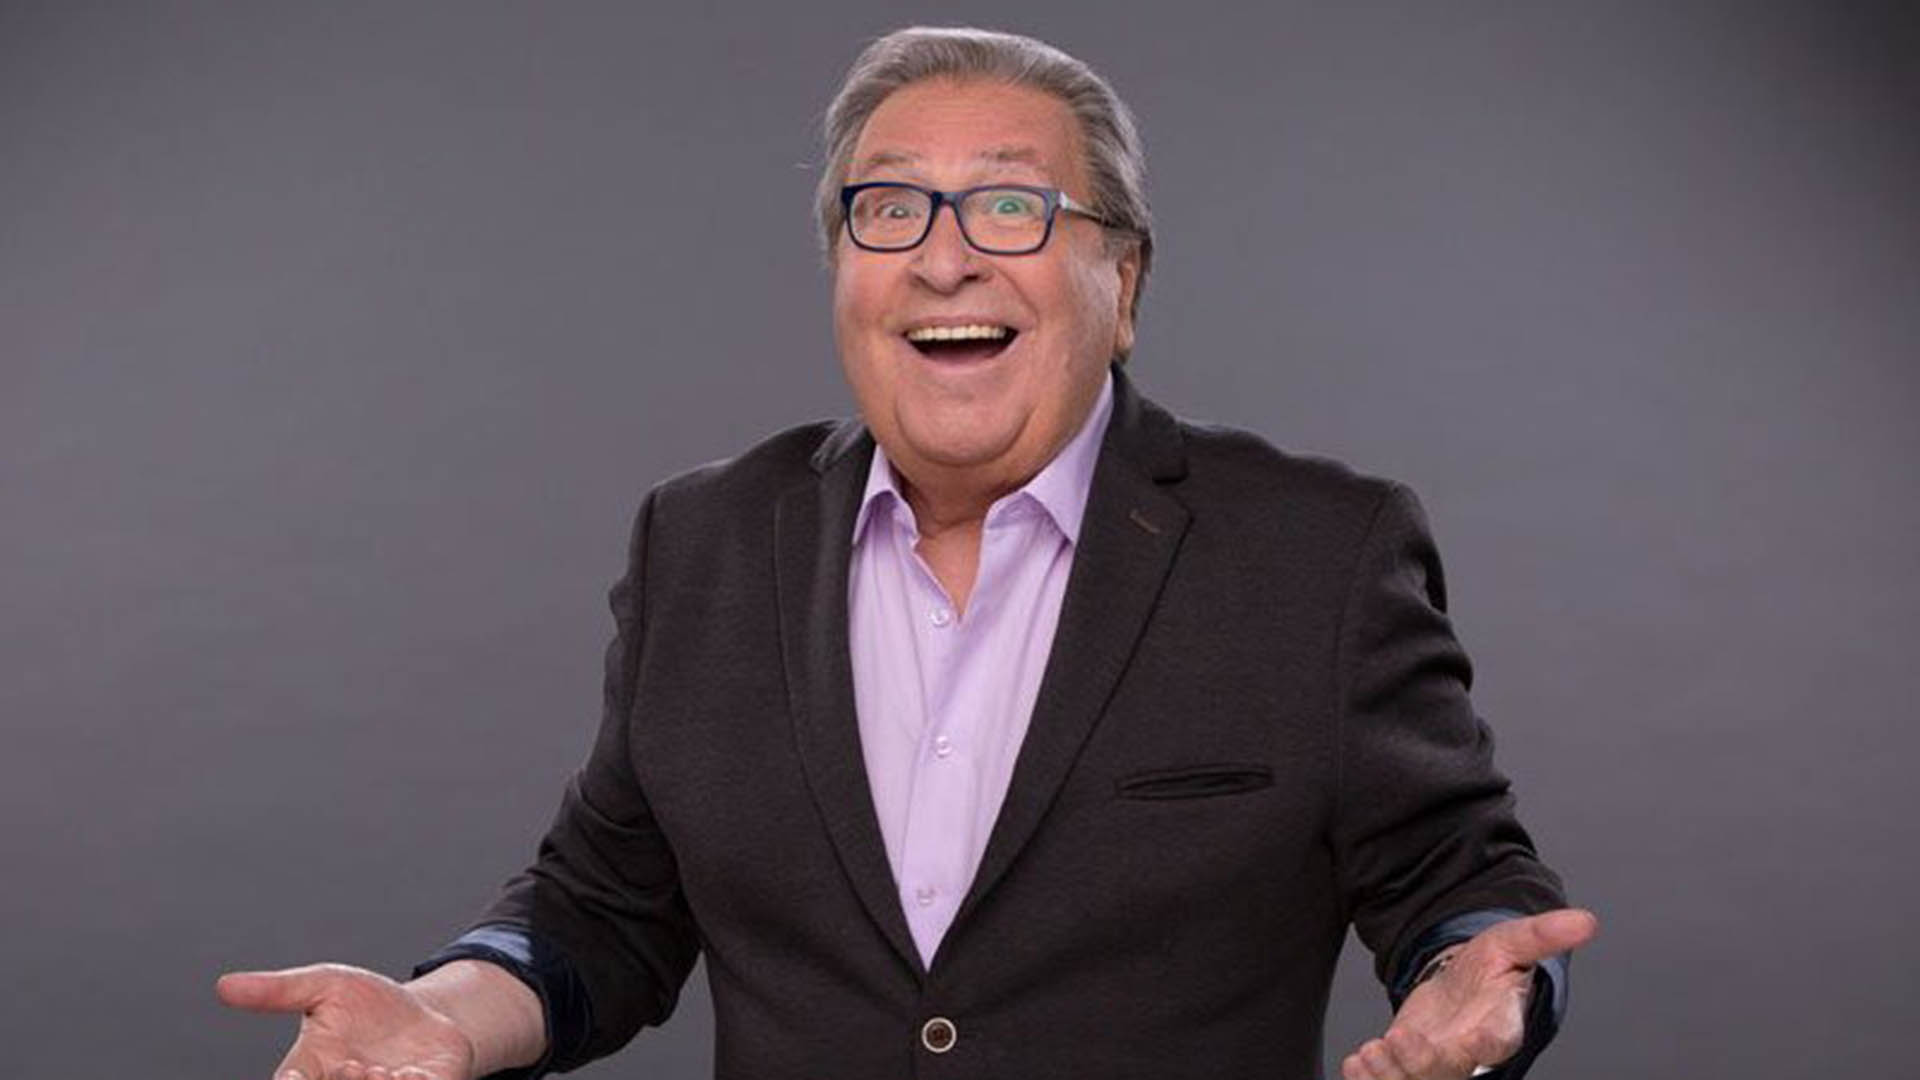 Eduardo Ravani, emblemática figura de la televisión chilena, quien fue director del Festival de Viña del Mar y de los exitosos programas de humor 'Japenning con ja' y 'Cachureos'.